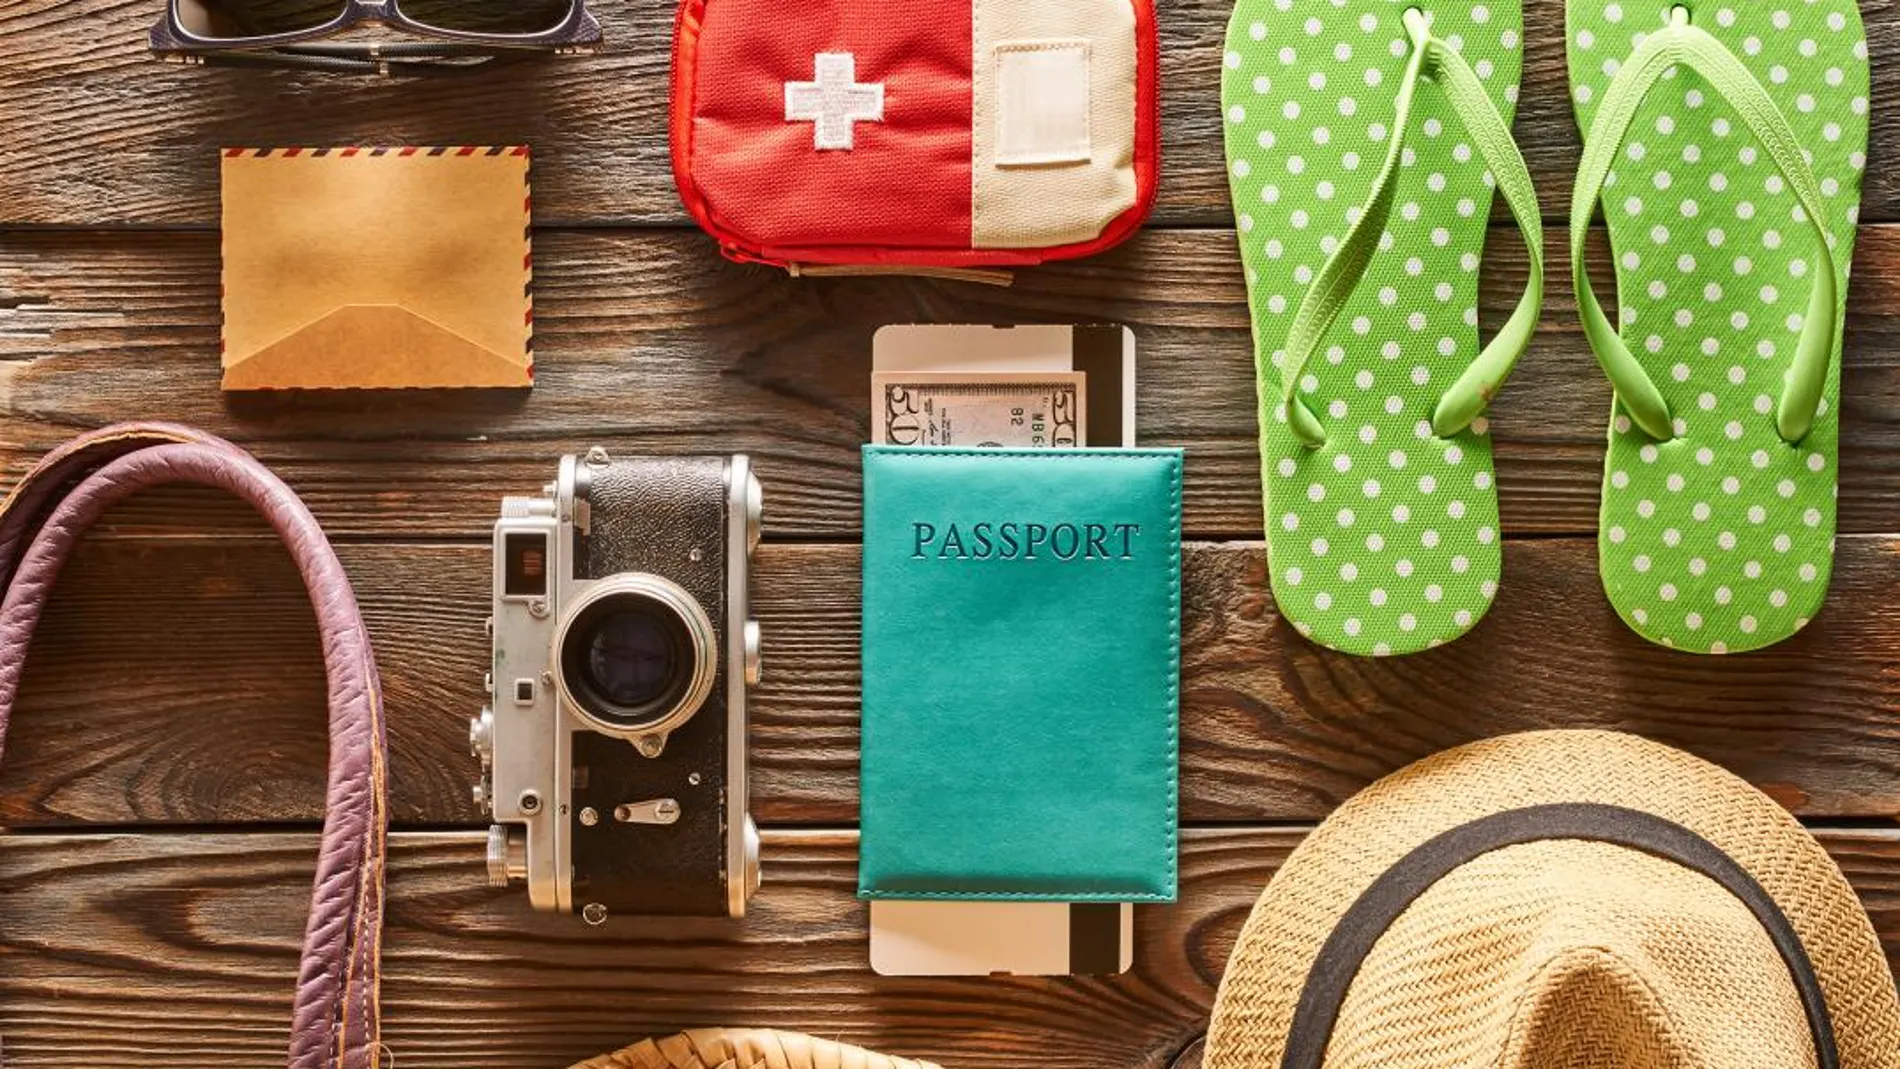 La parte más sana de tu maleta: no olvides tu botiquín de vacaciones